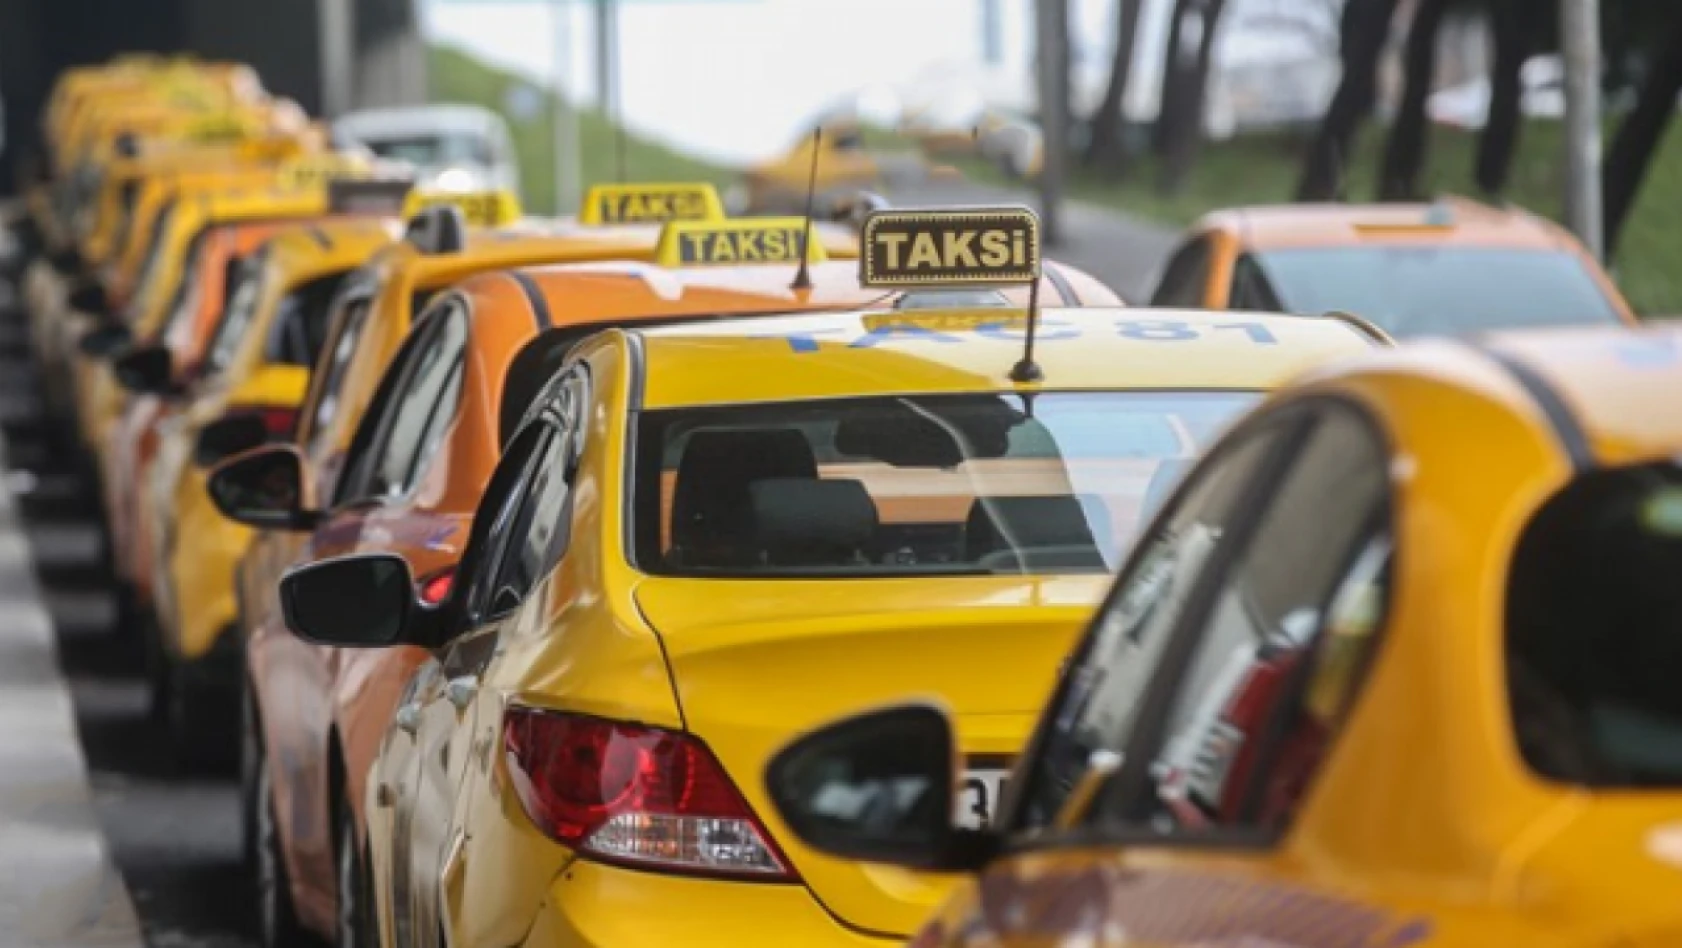 Ankara'da taksimetreye yüzde 50'ye yakın zam geldi – Kayseri'de de zam var mı?